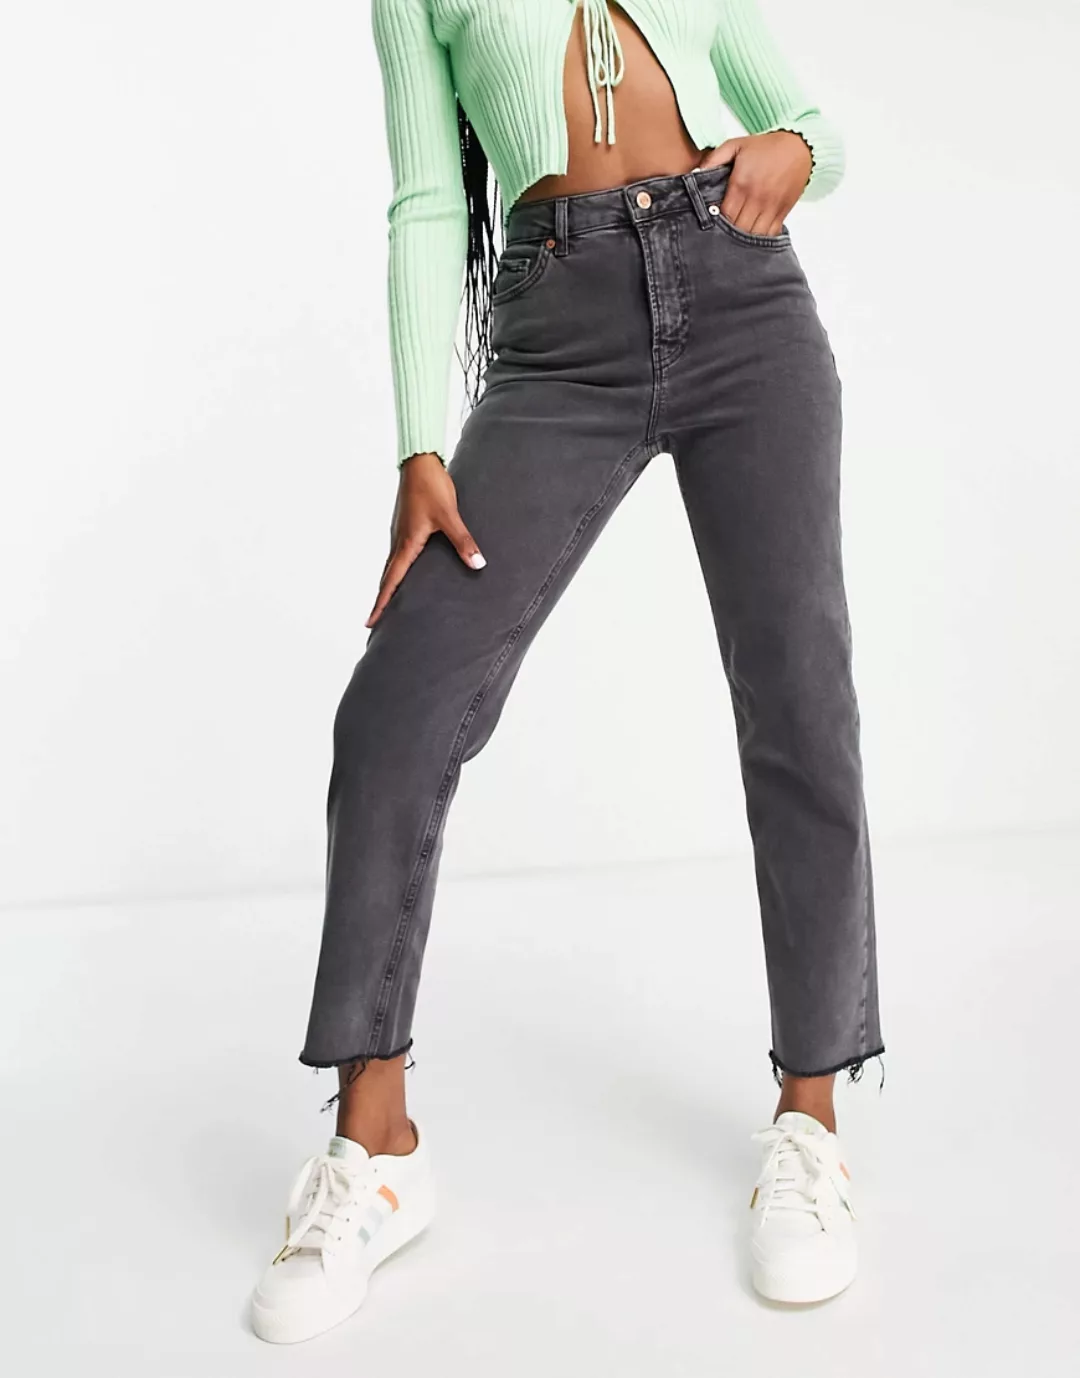 New Look – Schwarze Jeans mit geradem Beinschnitt günstig online kaufen